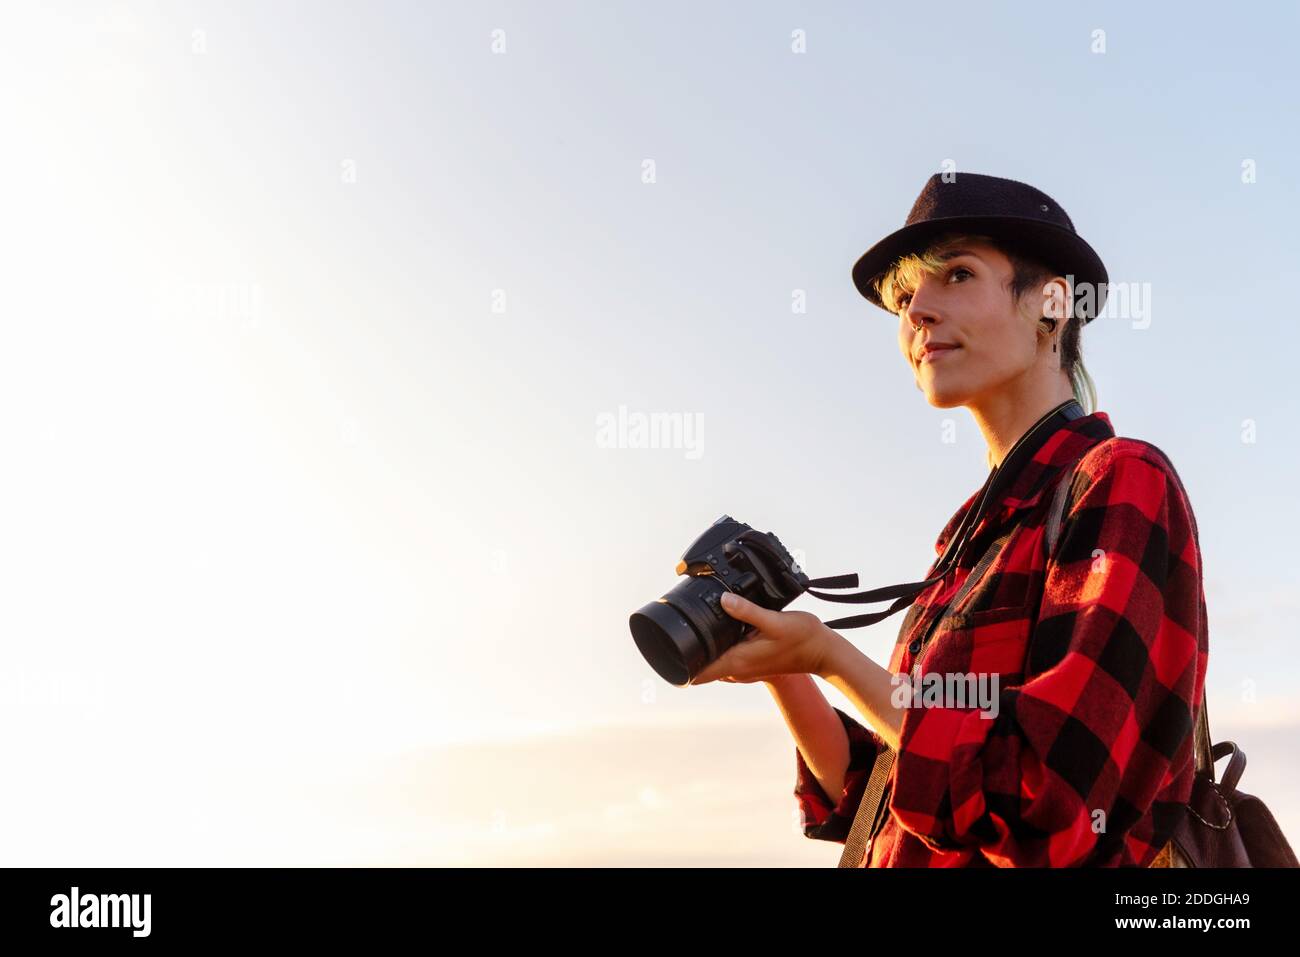 Vue latérale d'une femme voyageur androgyne avec appareil photo professionnel debout sur une colline dans une zone montagneuse Banque D'Images